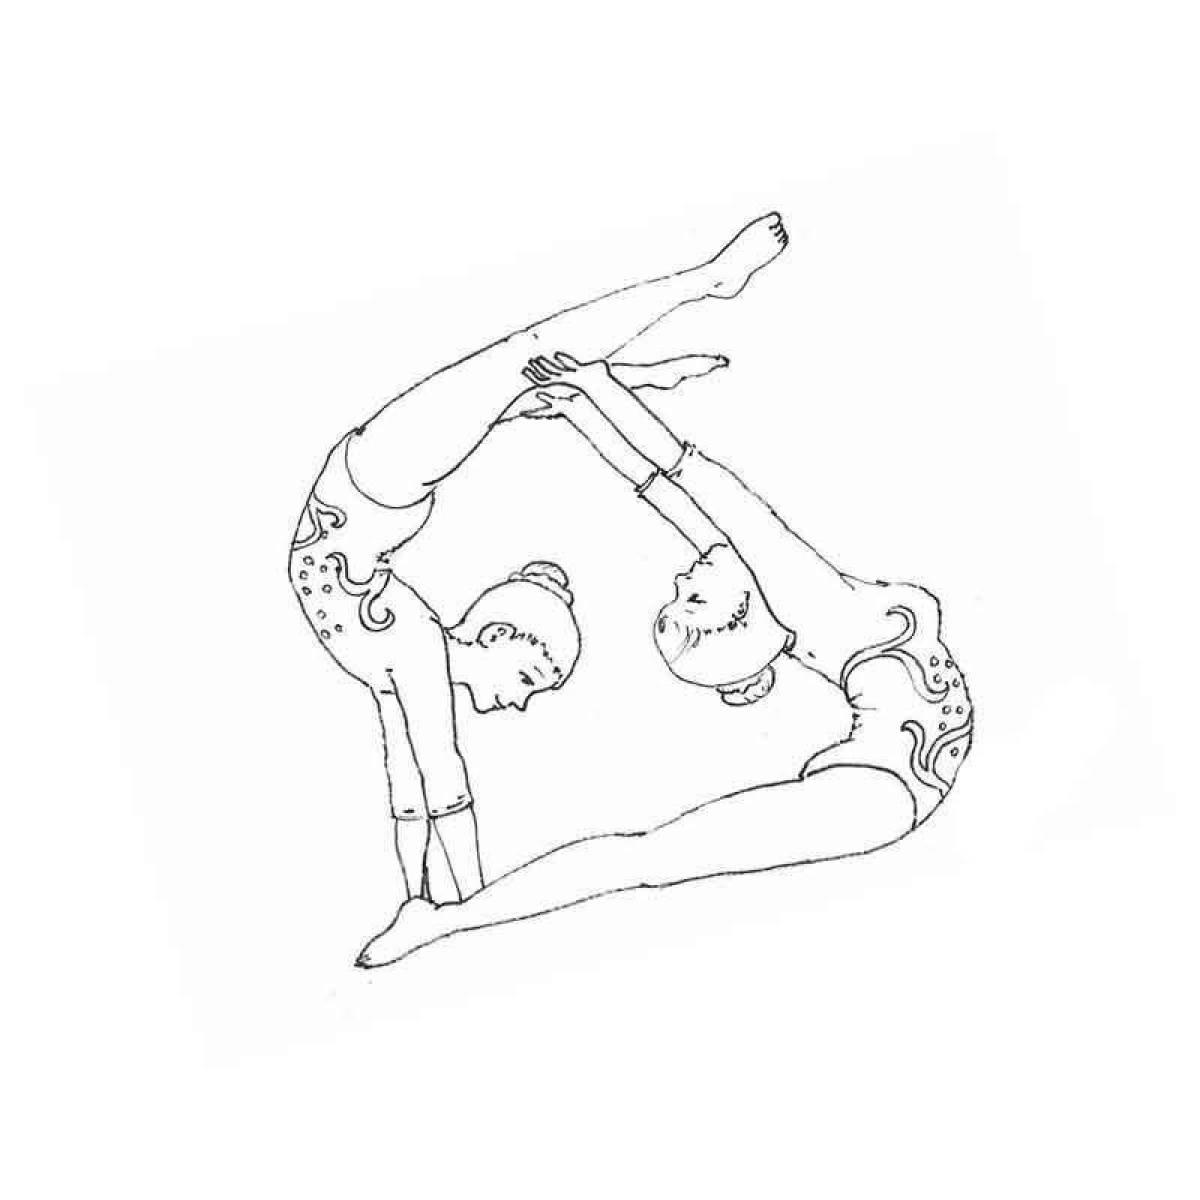 Раскраска для девочек гимнастика